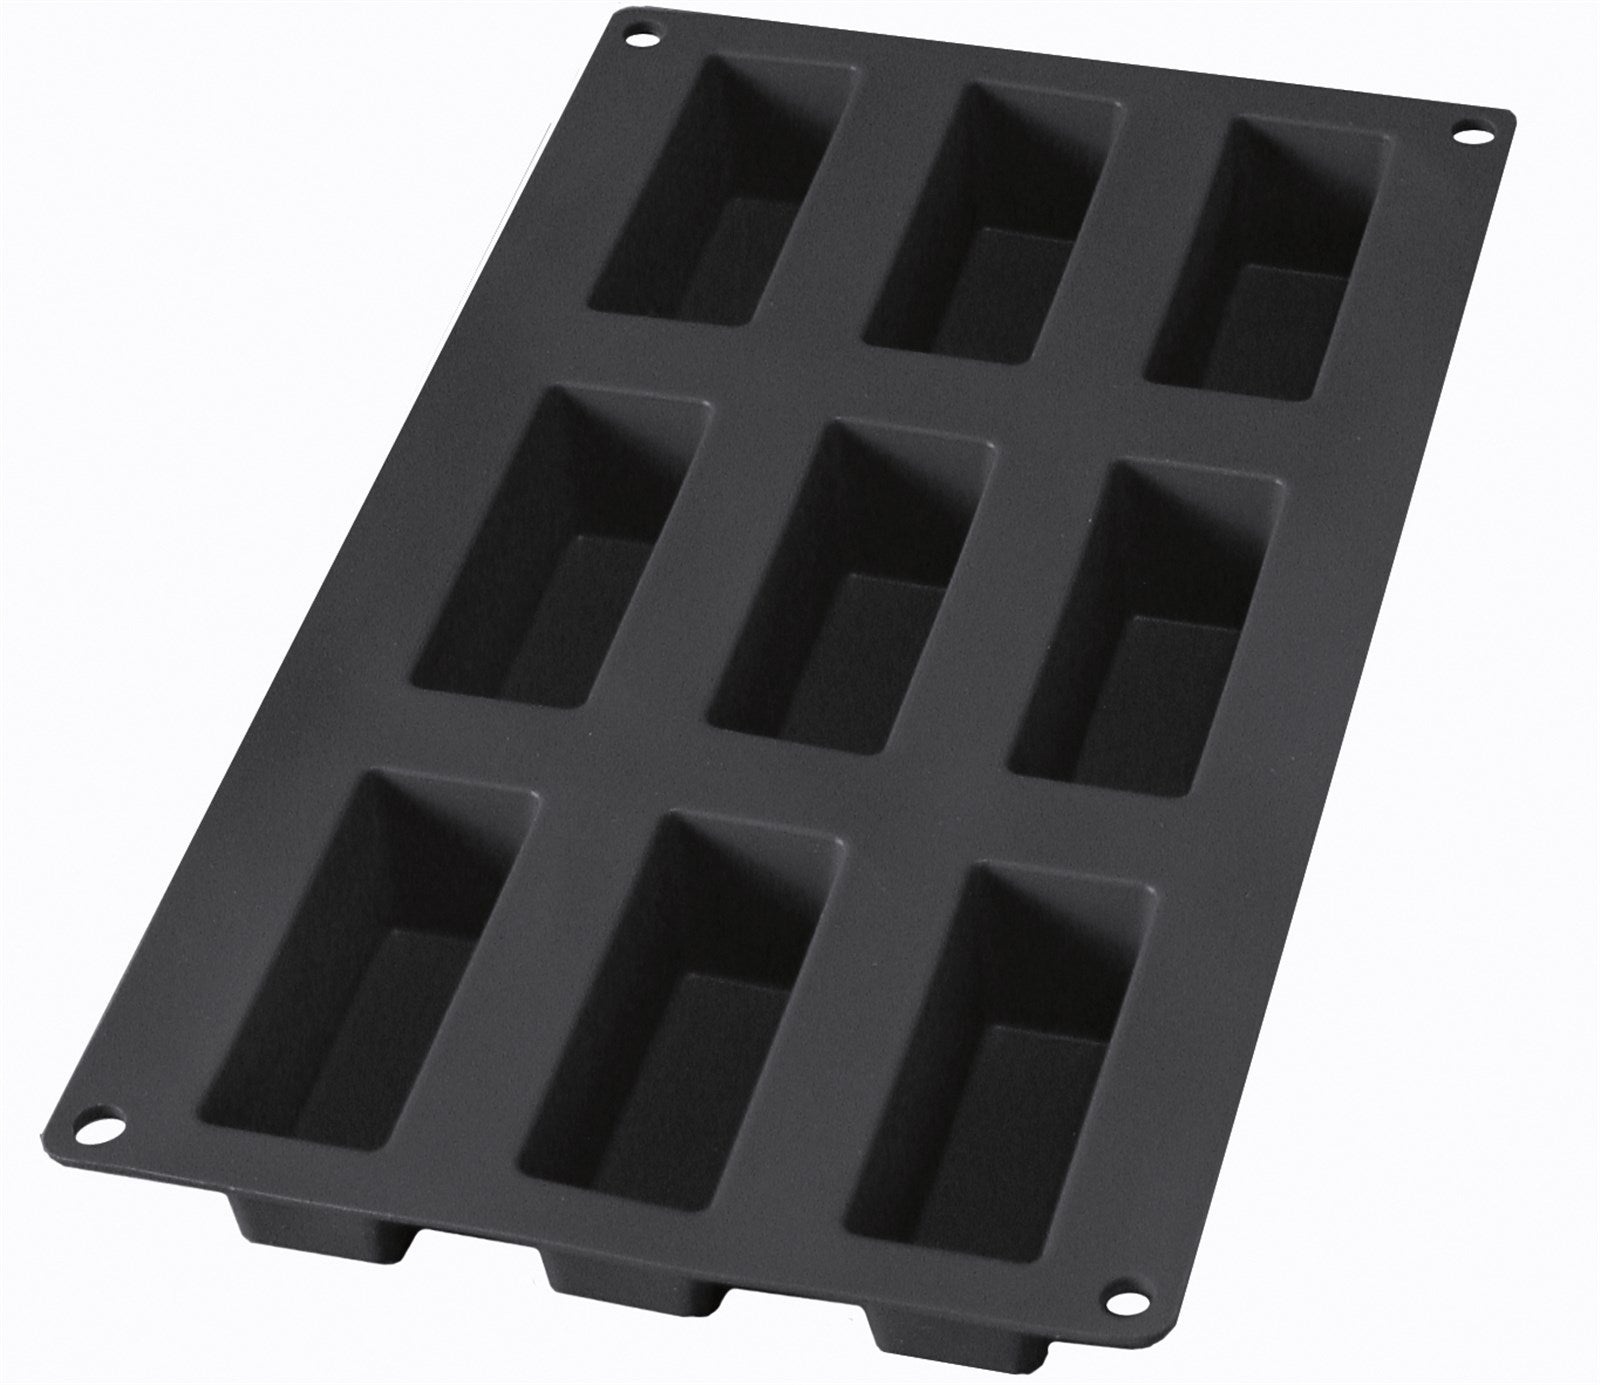 Backform 9er Mini Rechteck schwarz, 8x3x3 cm in Schwarz präsentiert im Onlineshop von KAQTU Design AG. Backen ist von Lékué